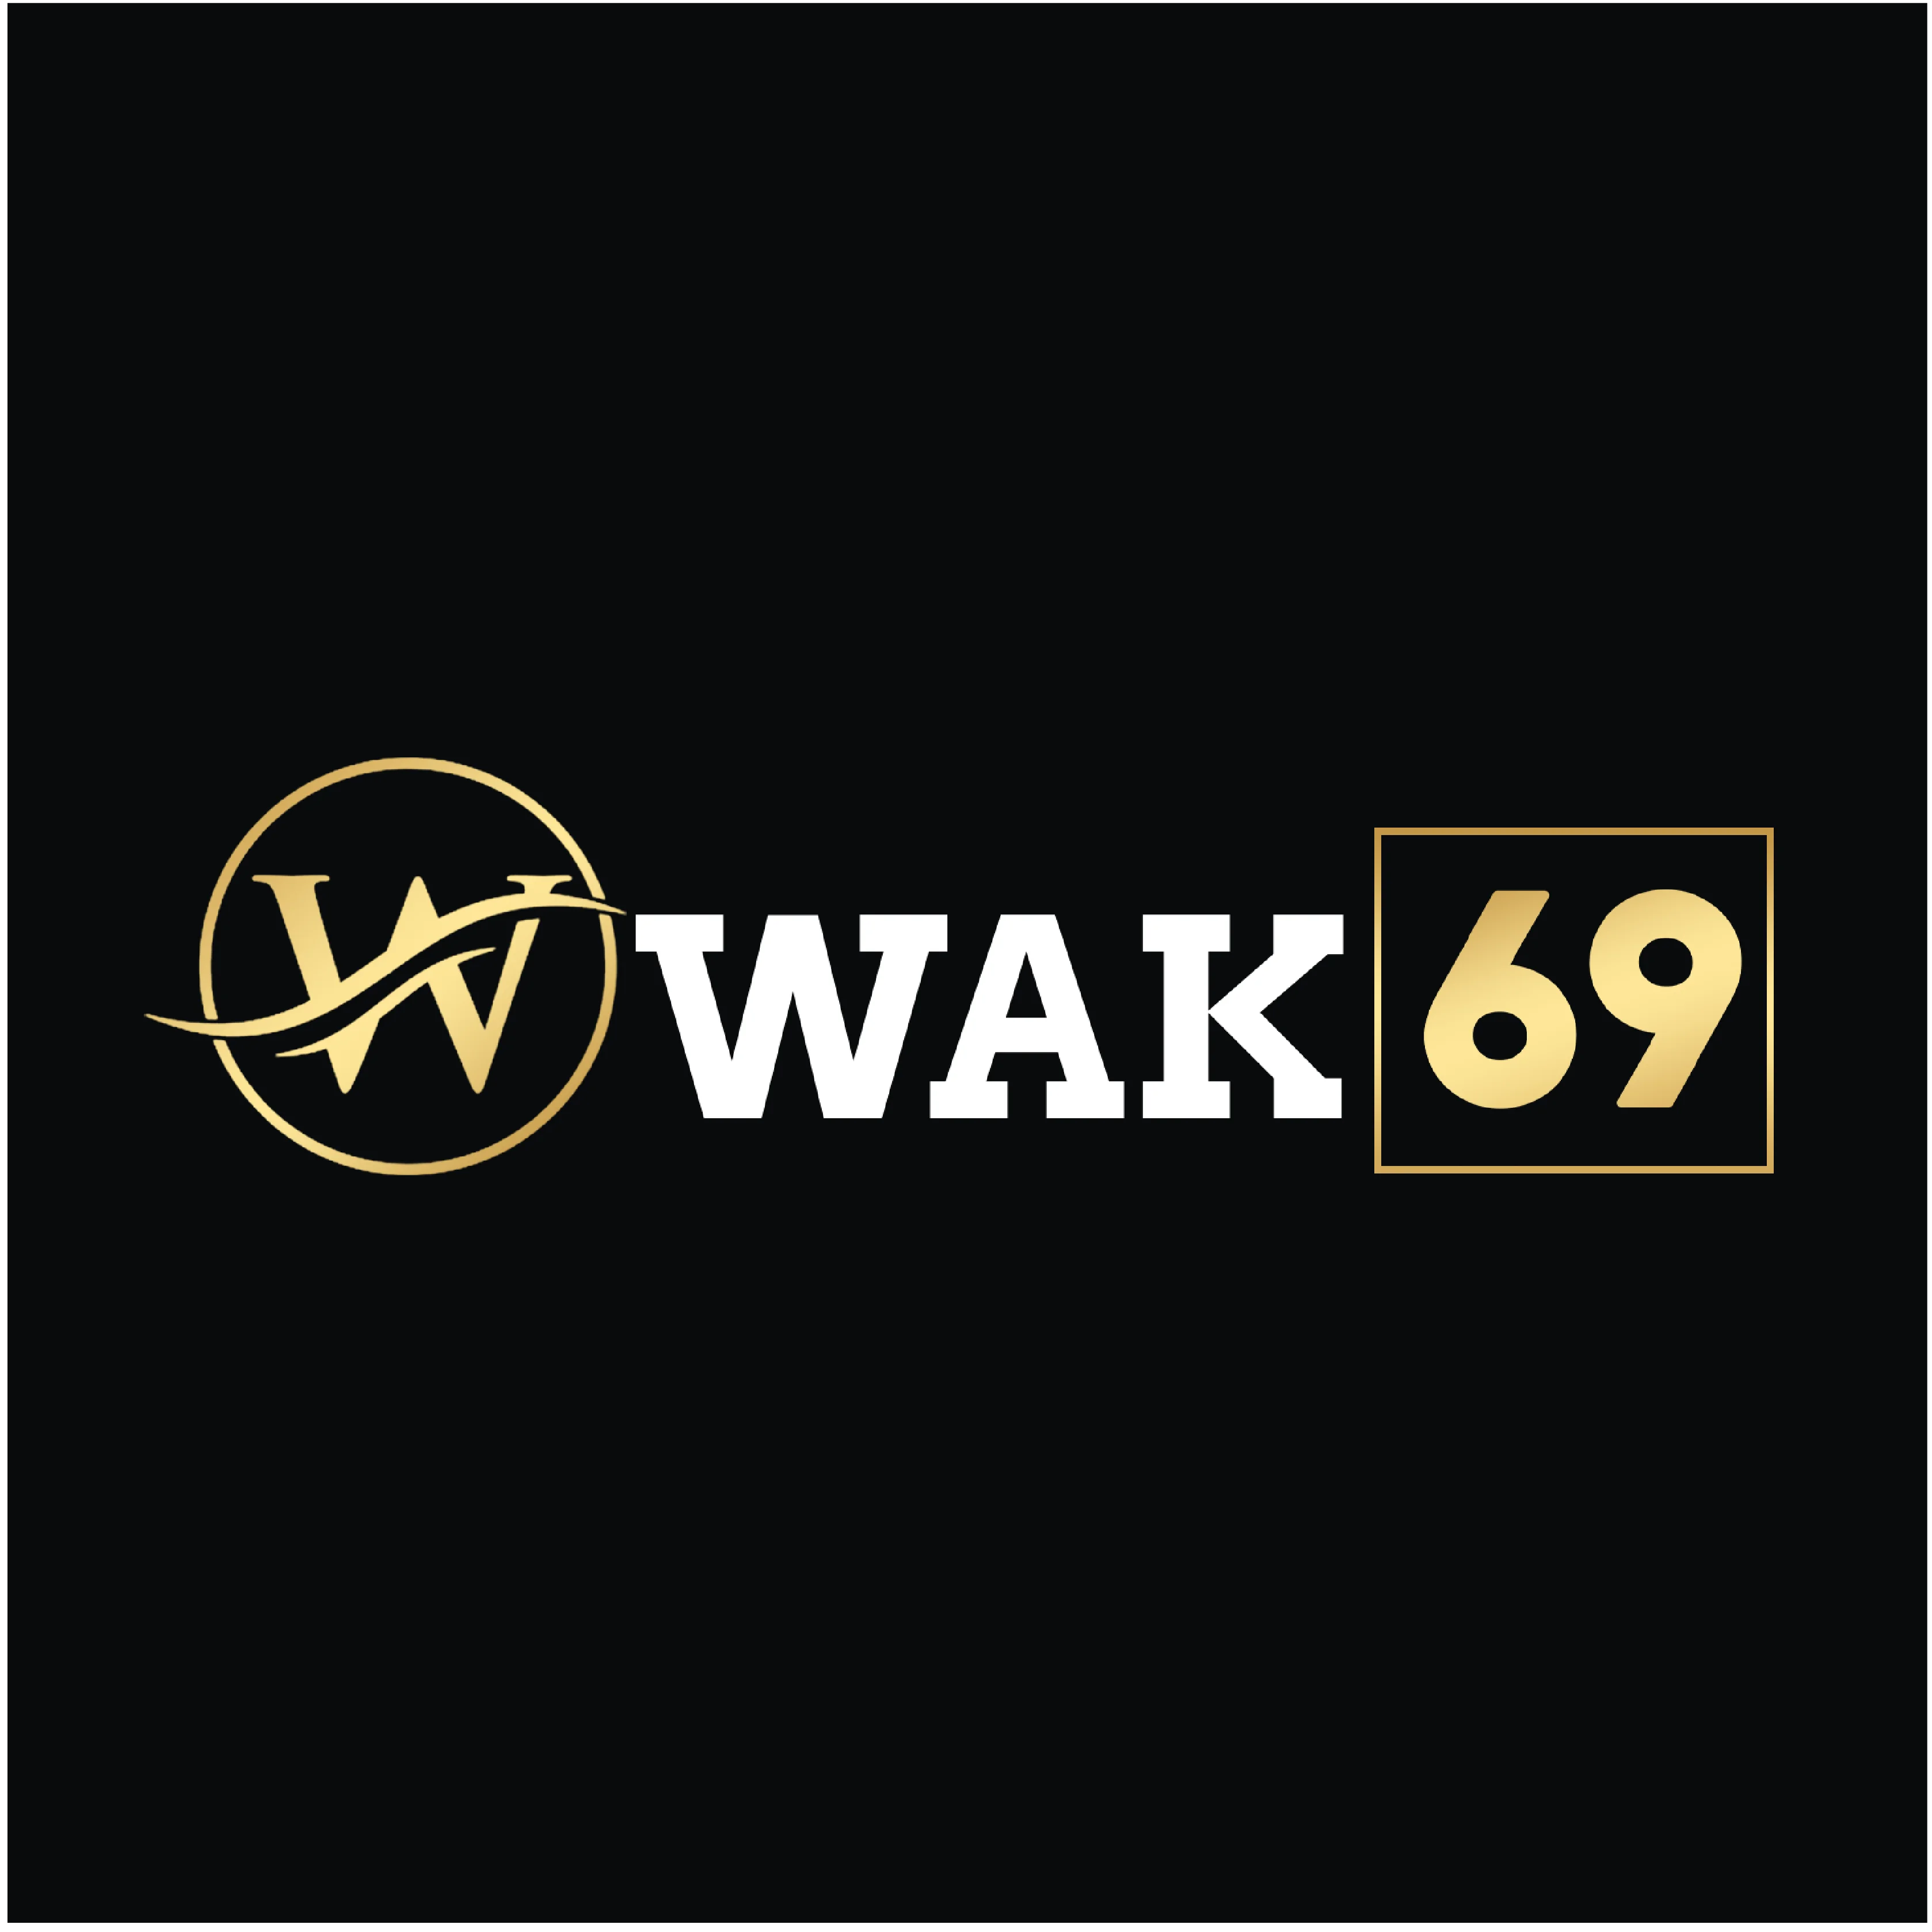 wak69